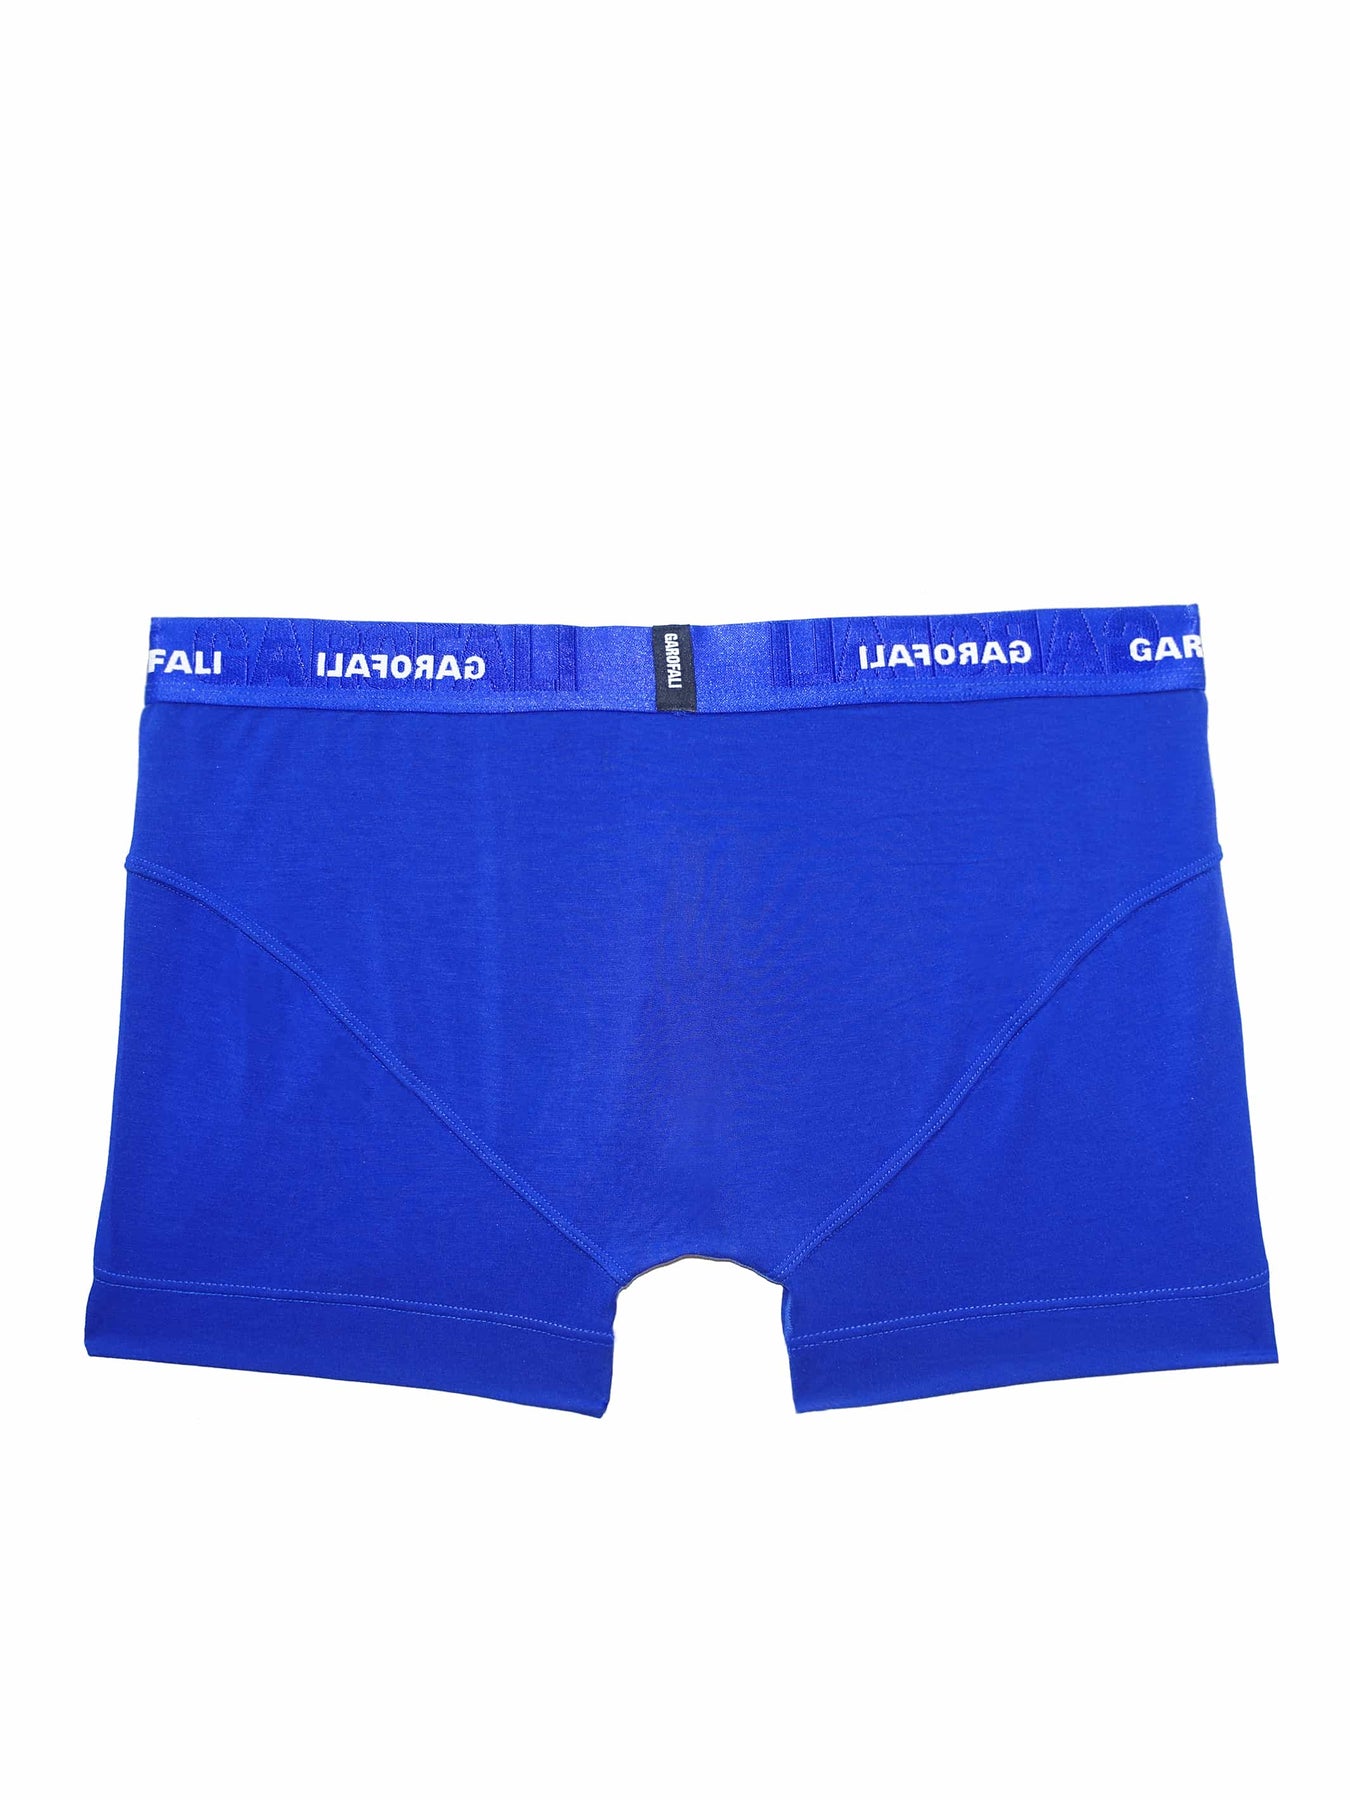 GAROFALI - Underwear, Swimwear and Clothing Capsules